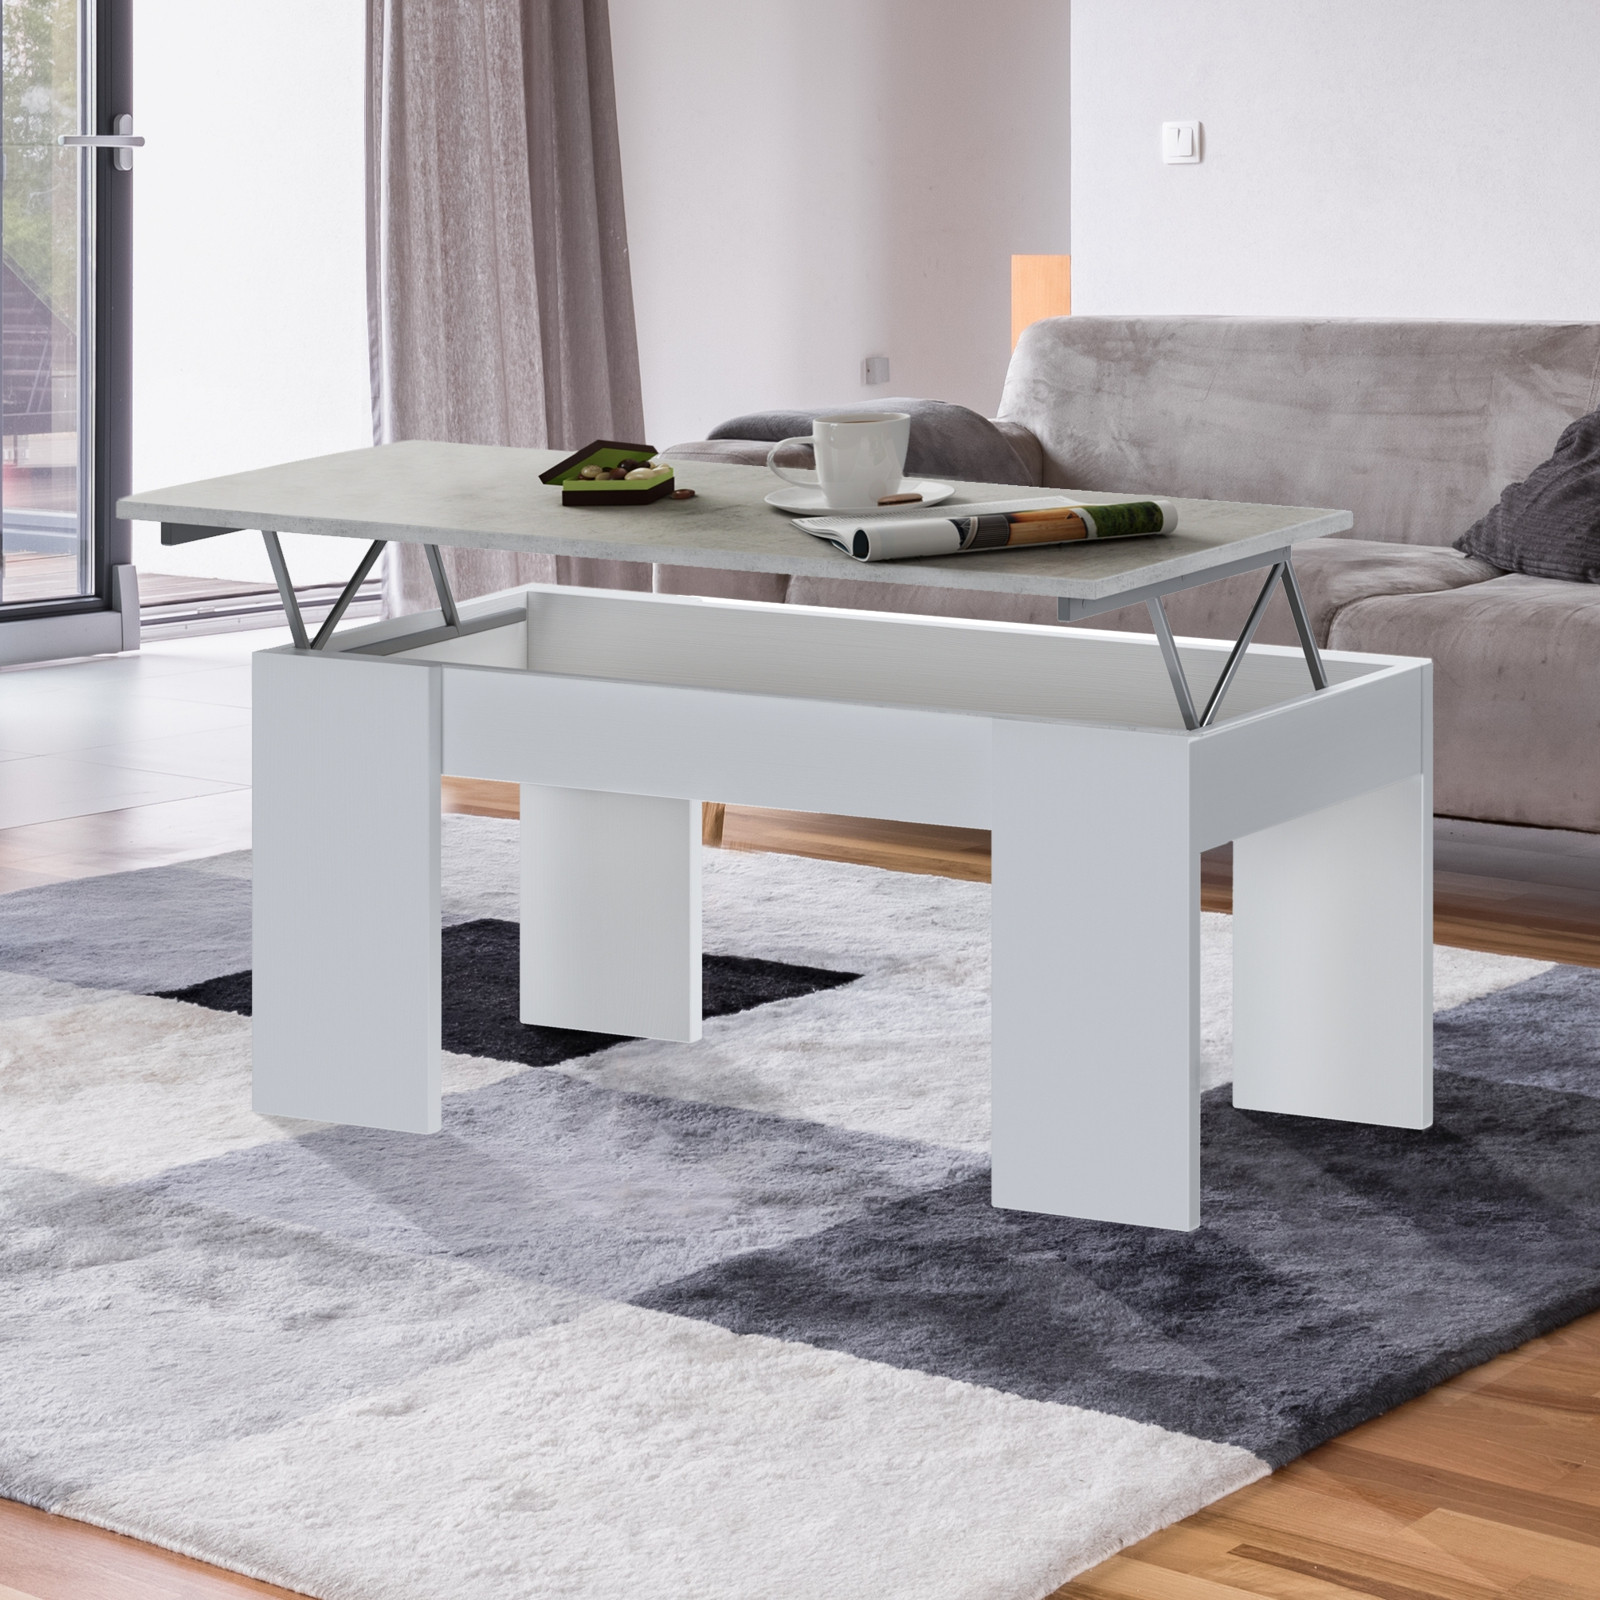 https://www.emporioarredo.it/10330-large_default/tavolino-contenitore-dreda-cement-grigio-finitura-cemento-e-larice-bianco-110x50xh446-cm.jpg